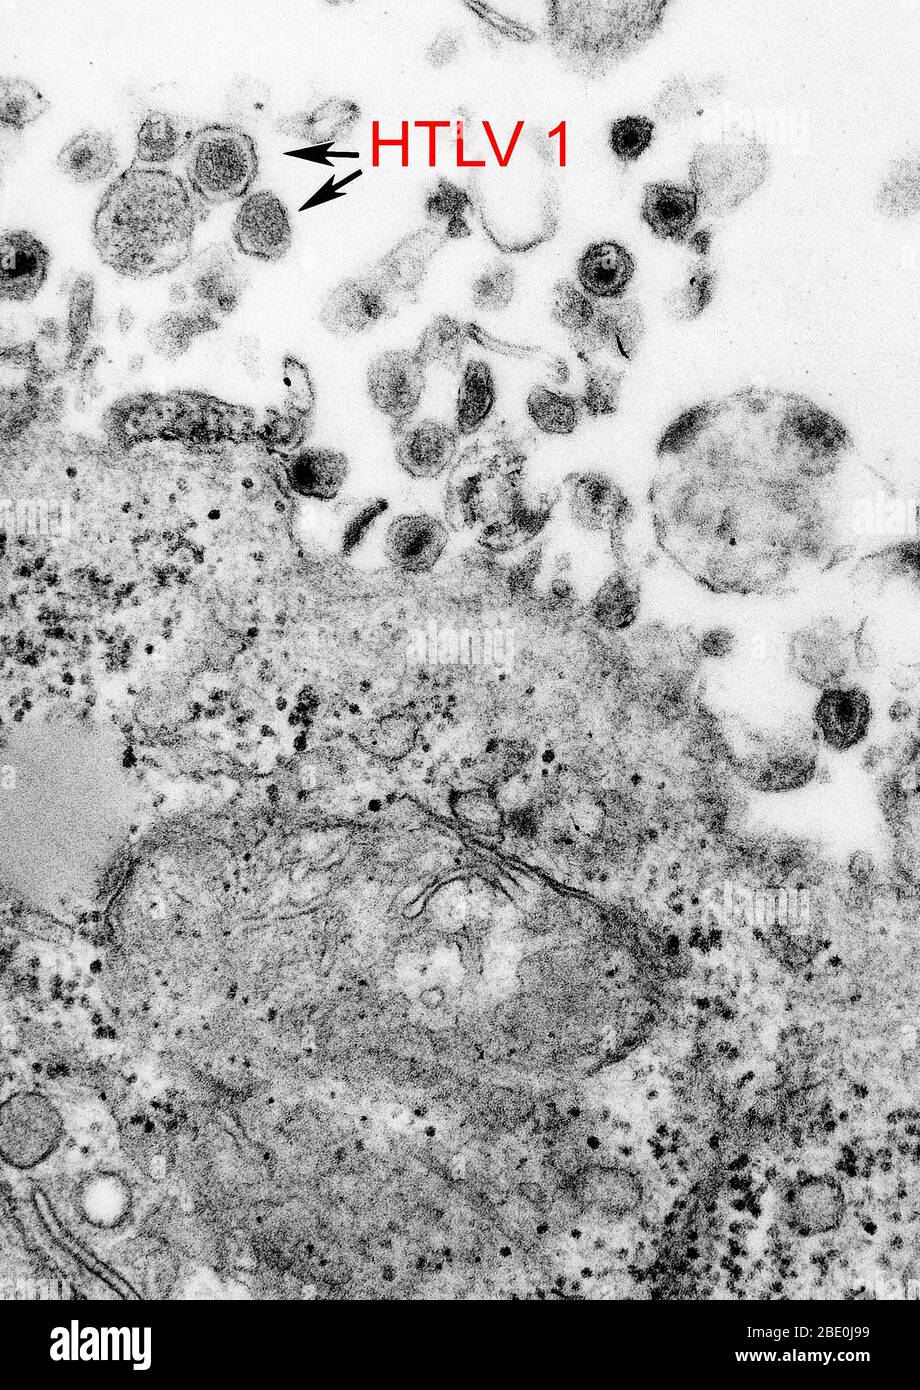 Das humane T-Zell-Leukämie-Virus Typ 1 (HTLV-1), (auch bekannt als das humane T lymphotrope Virus Typ 1), das humane T-Zell-Leukämie-Virus Typ 1 (HTLV-1), ein humanes Onkoretrovirus, ist der ätiologische Wirkstoff der erwachsenen T-Zell-Leukämie und der tropischen spastischen Paraparese/HTLV-1-assoziierten Myelopathie. Stockfoto